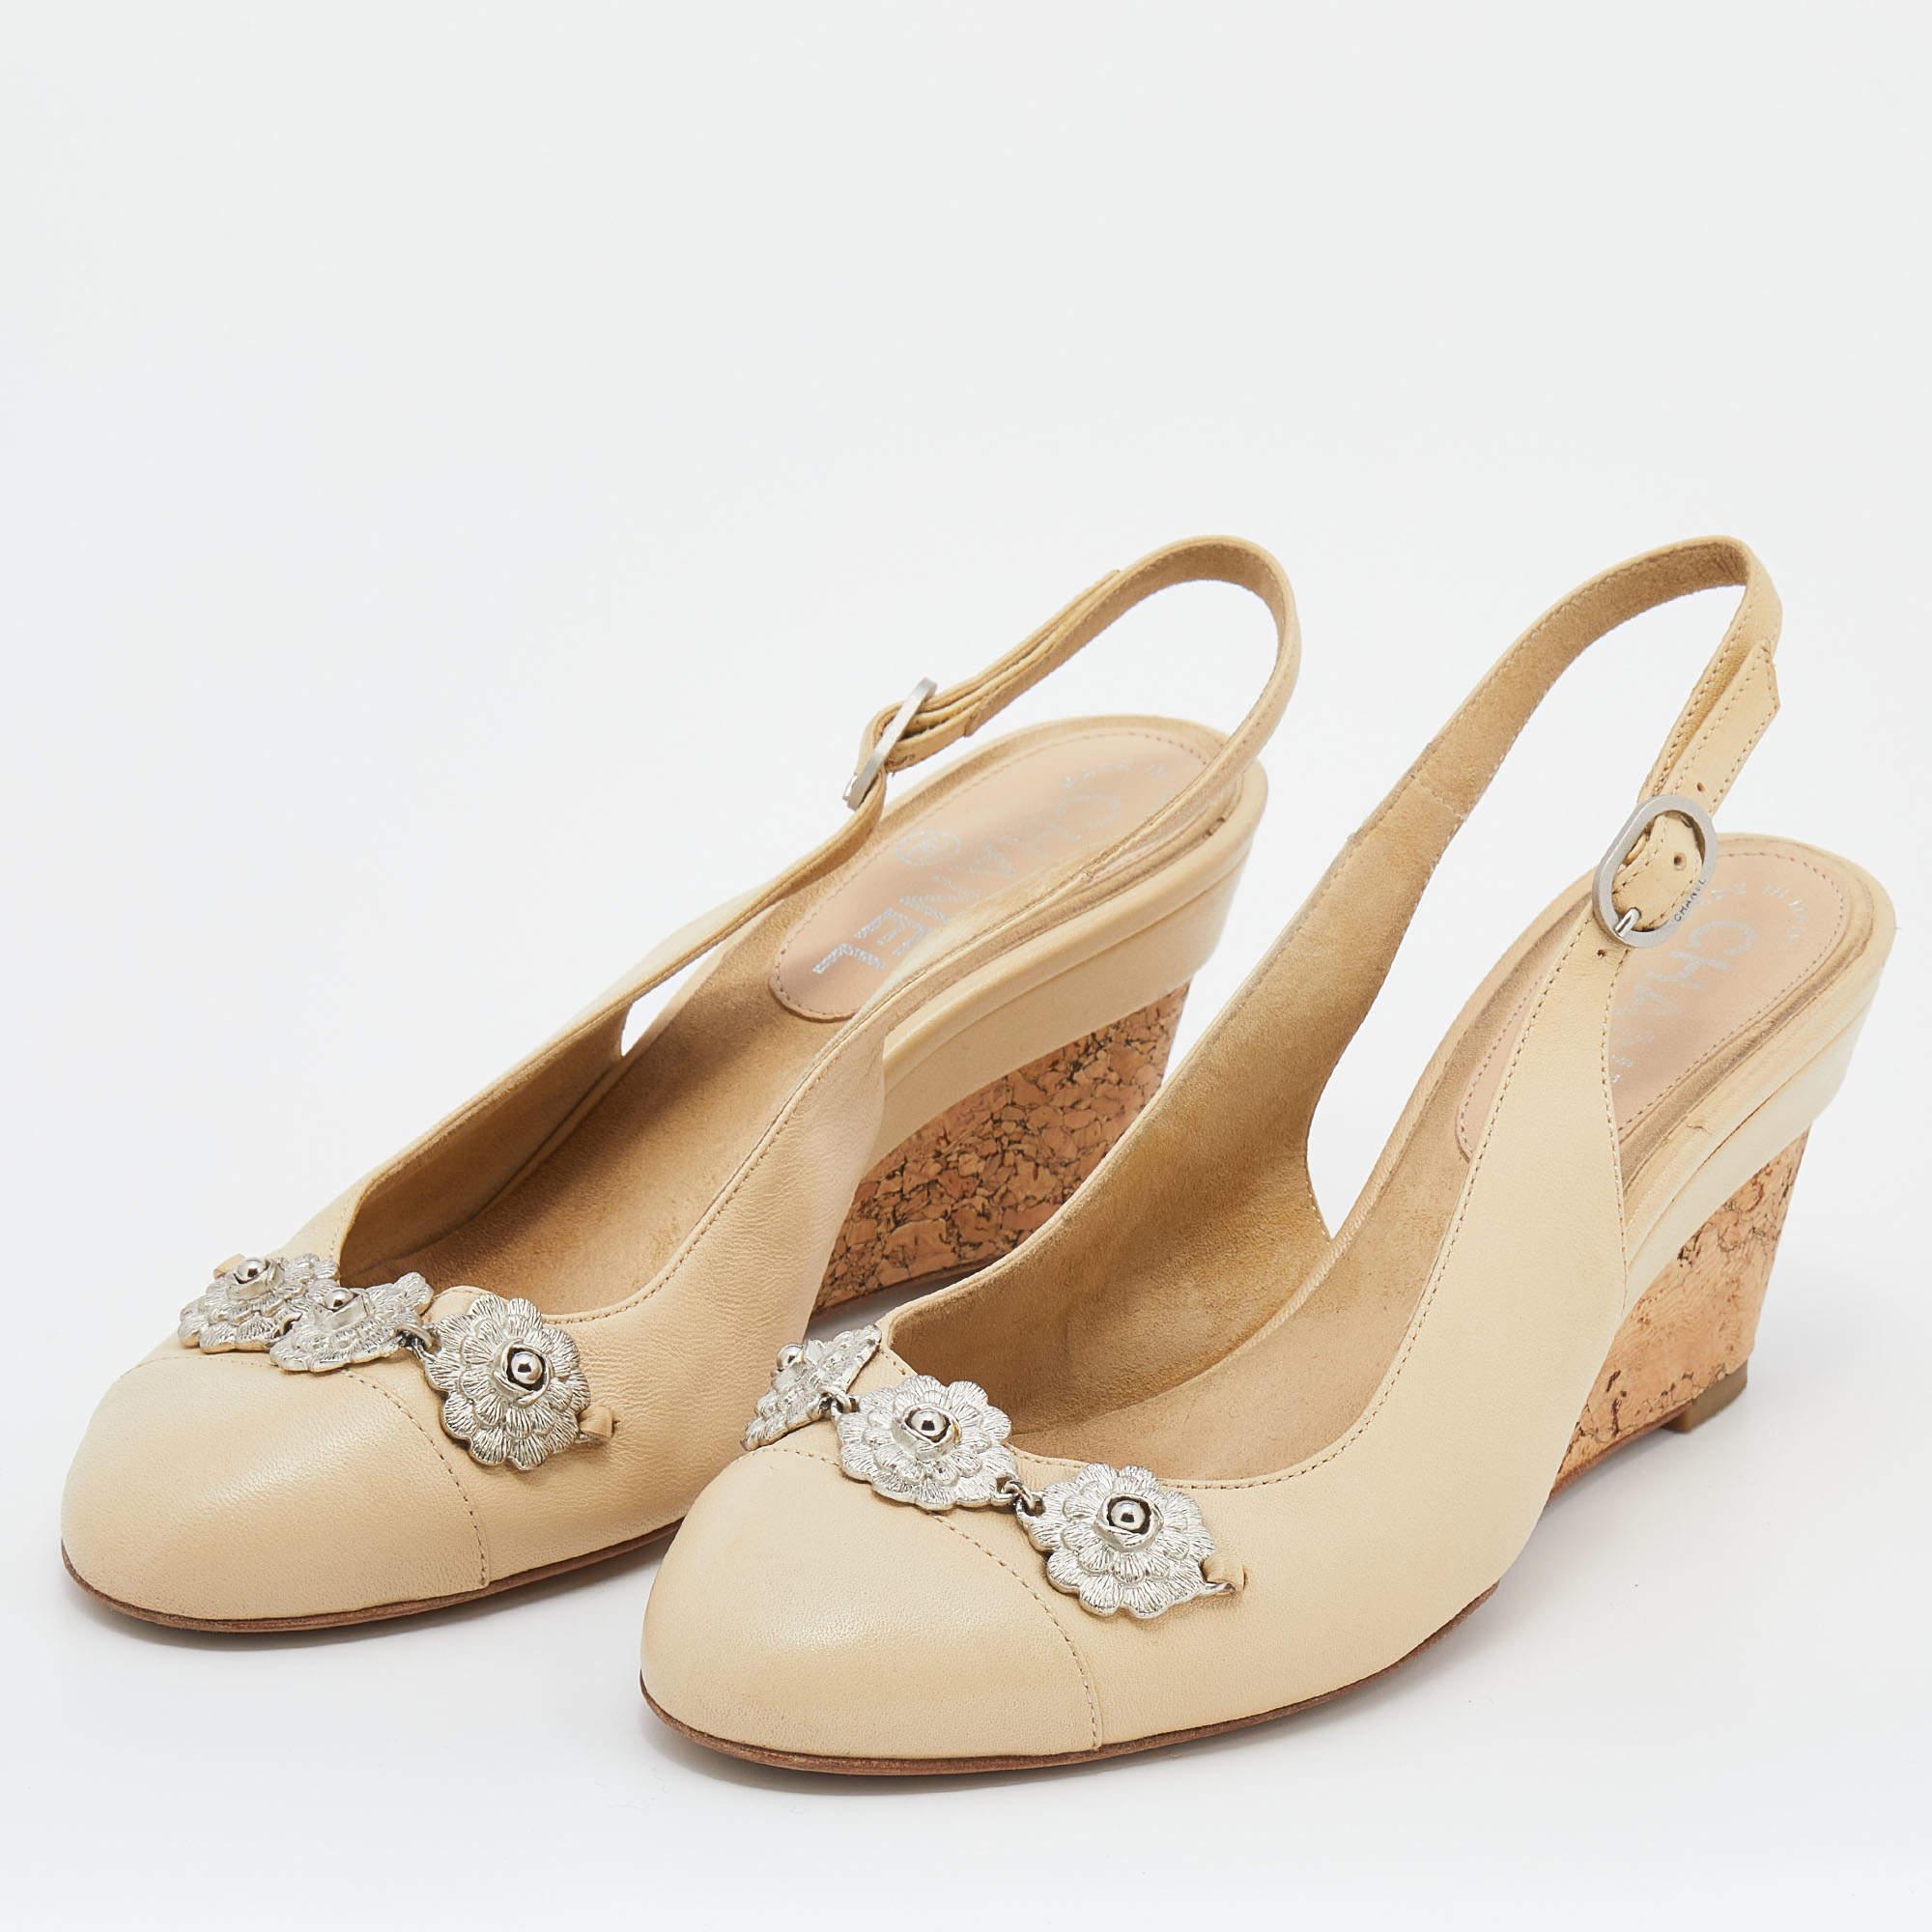 Cette paire de sandales intemporelles de Chanel est encore plus belle aux pieds. Ces chaussures élégantes en cuir crème sont dotées de bouts ronds ornés de fleurs, de talons compensés et d'escarpins à boucle pour une finition élégante.

